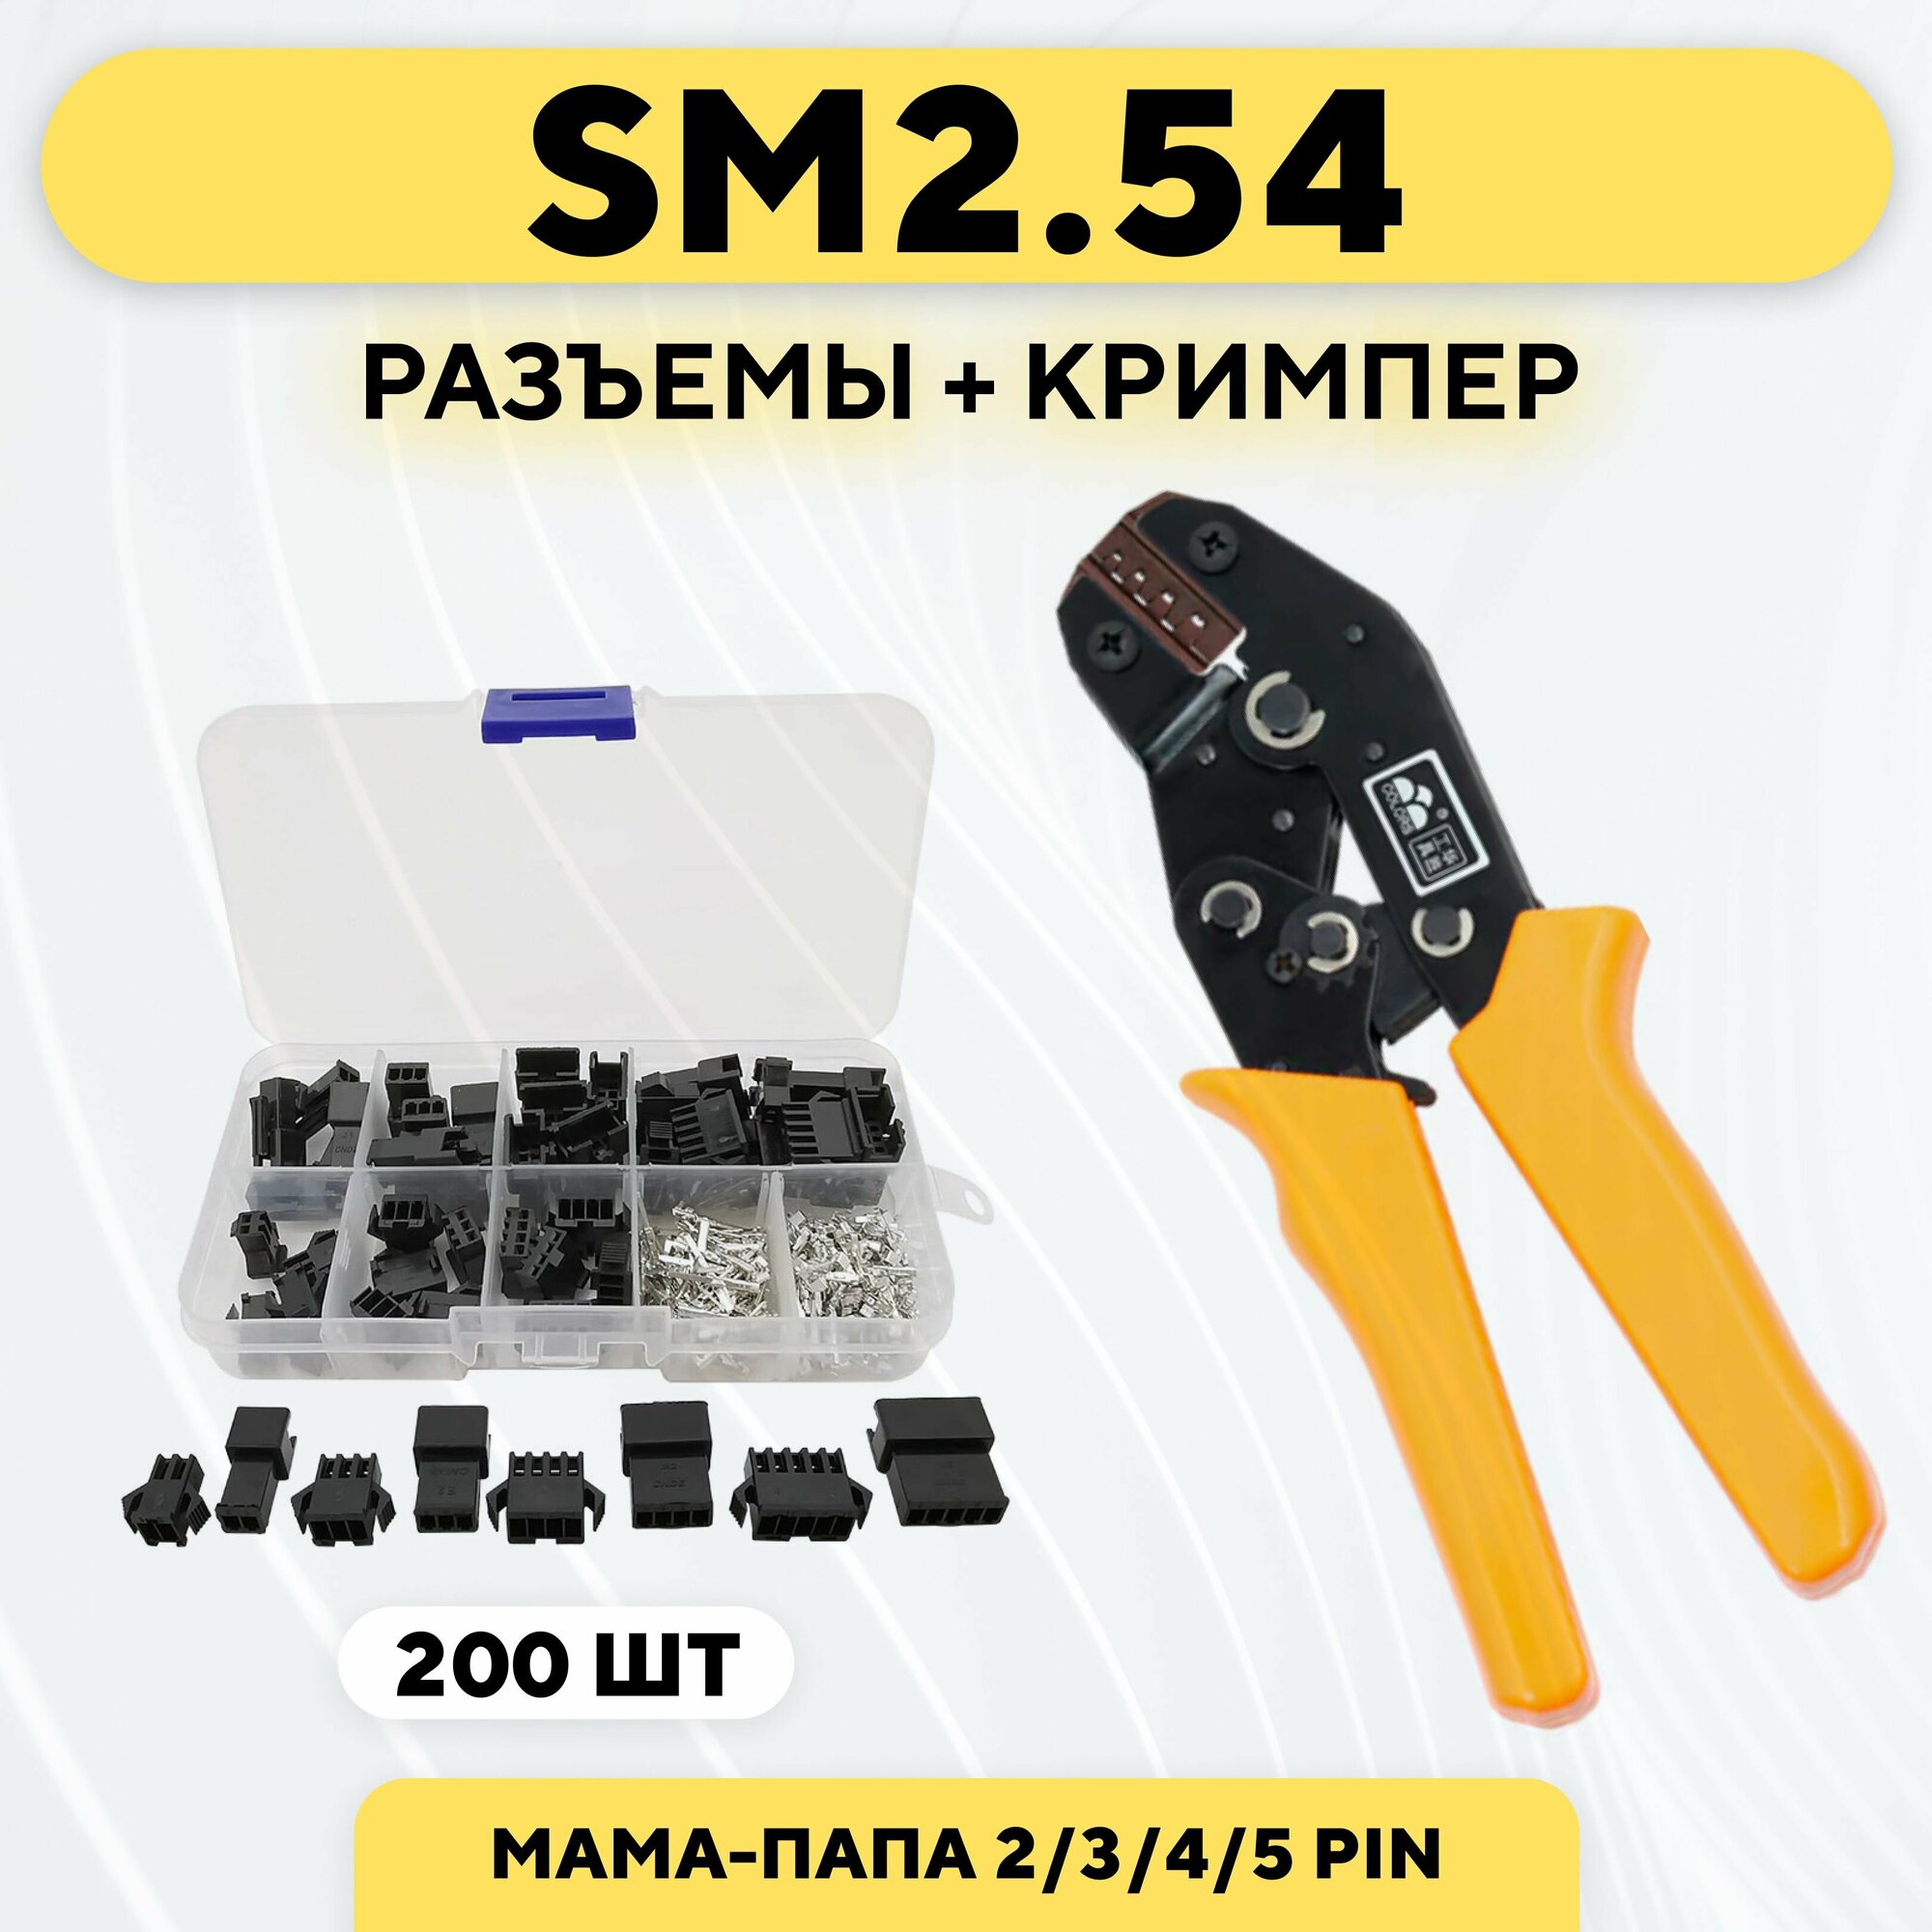 Комплект разъемов SM2.54 200 штук + кримпер (обжимные клещи)